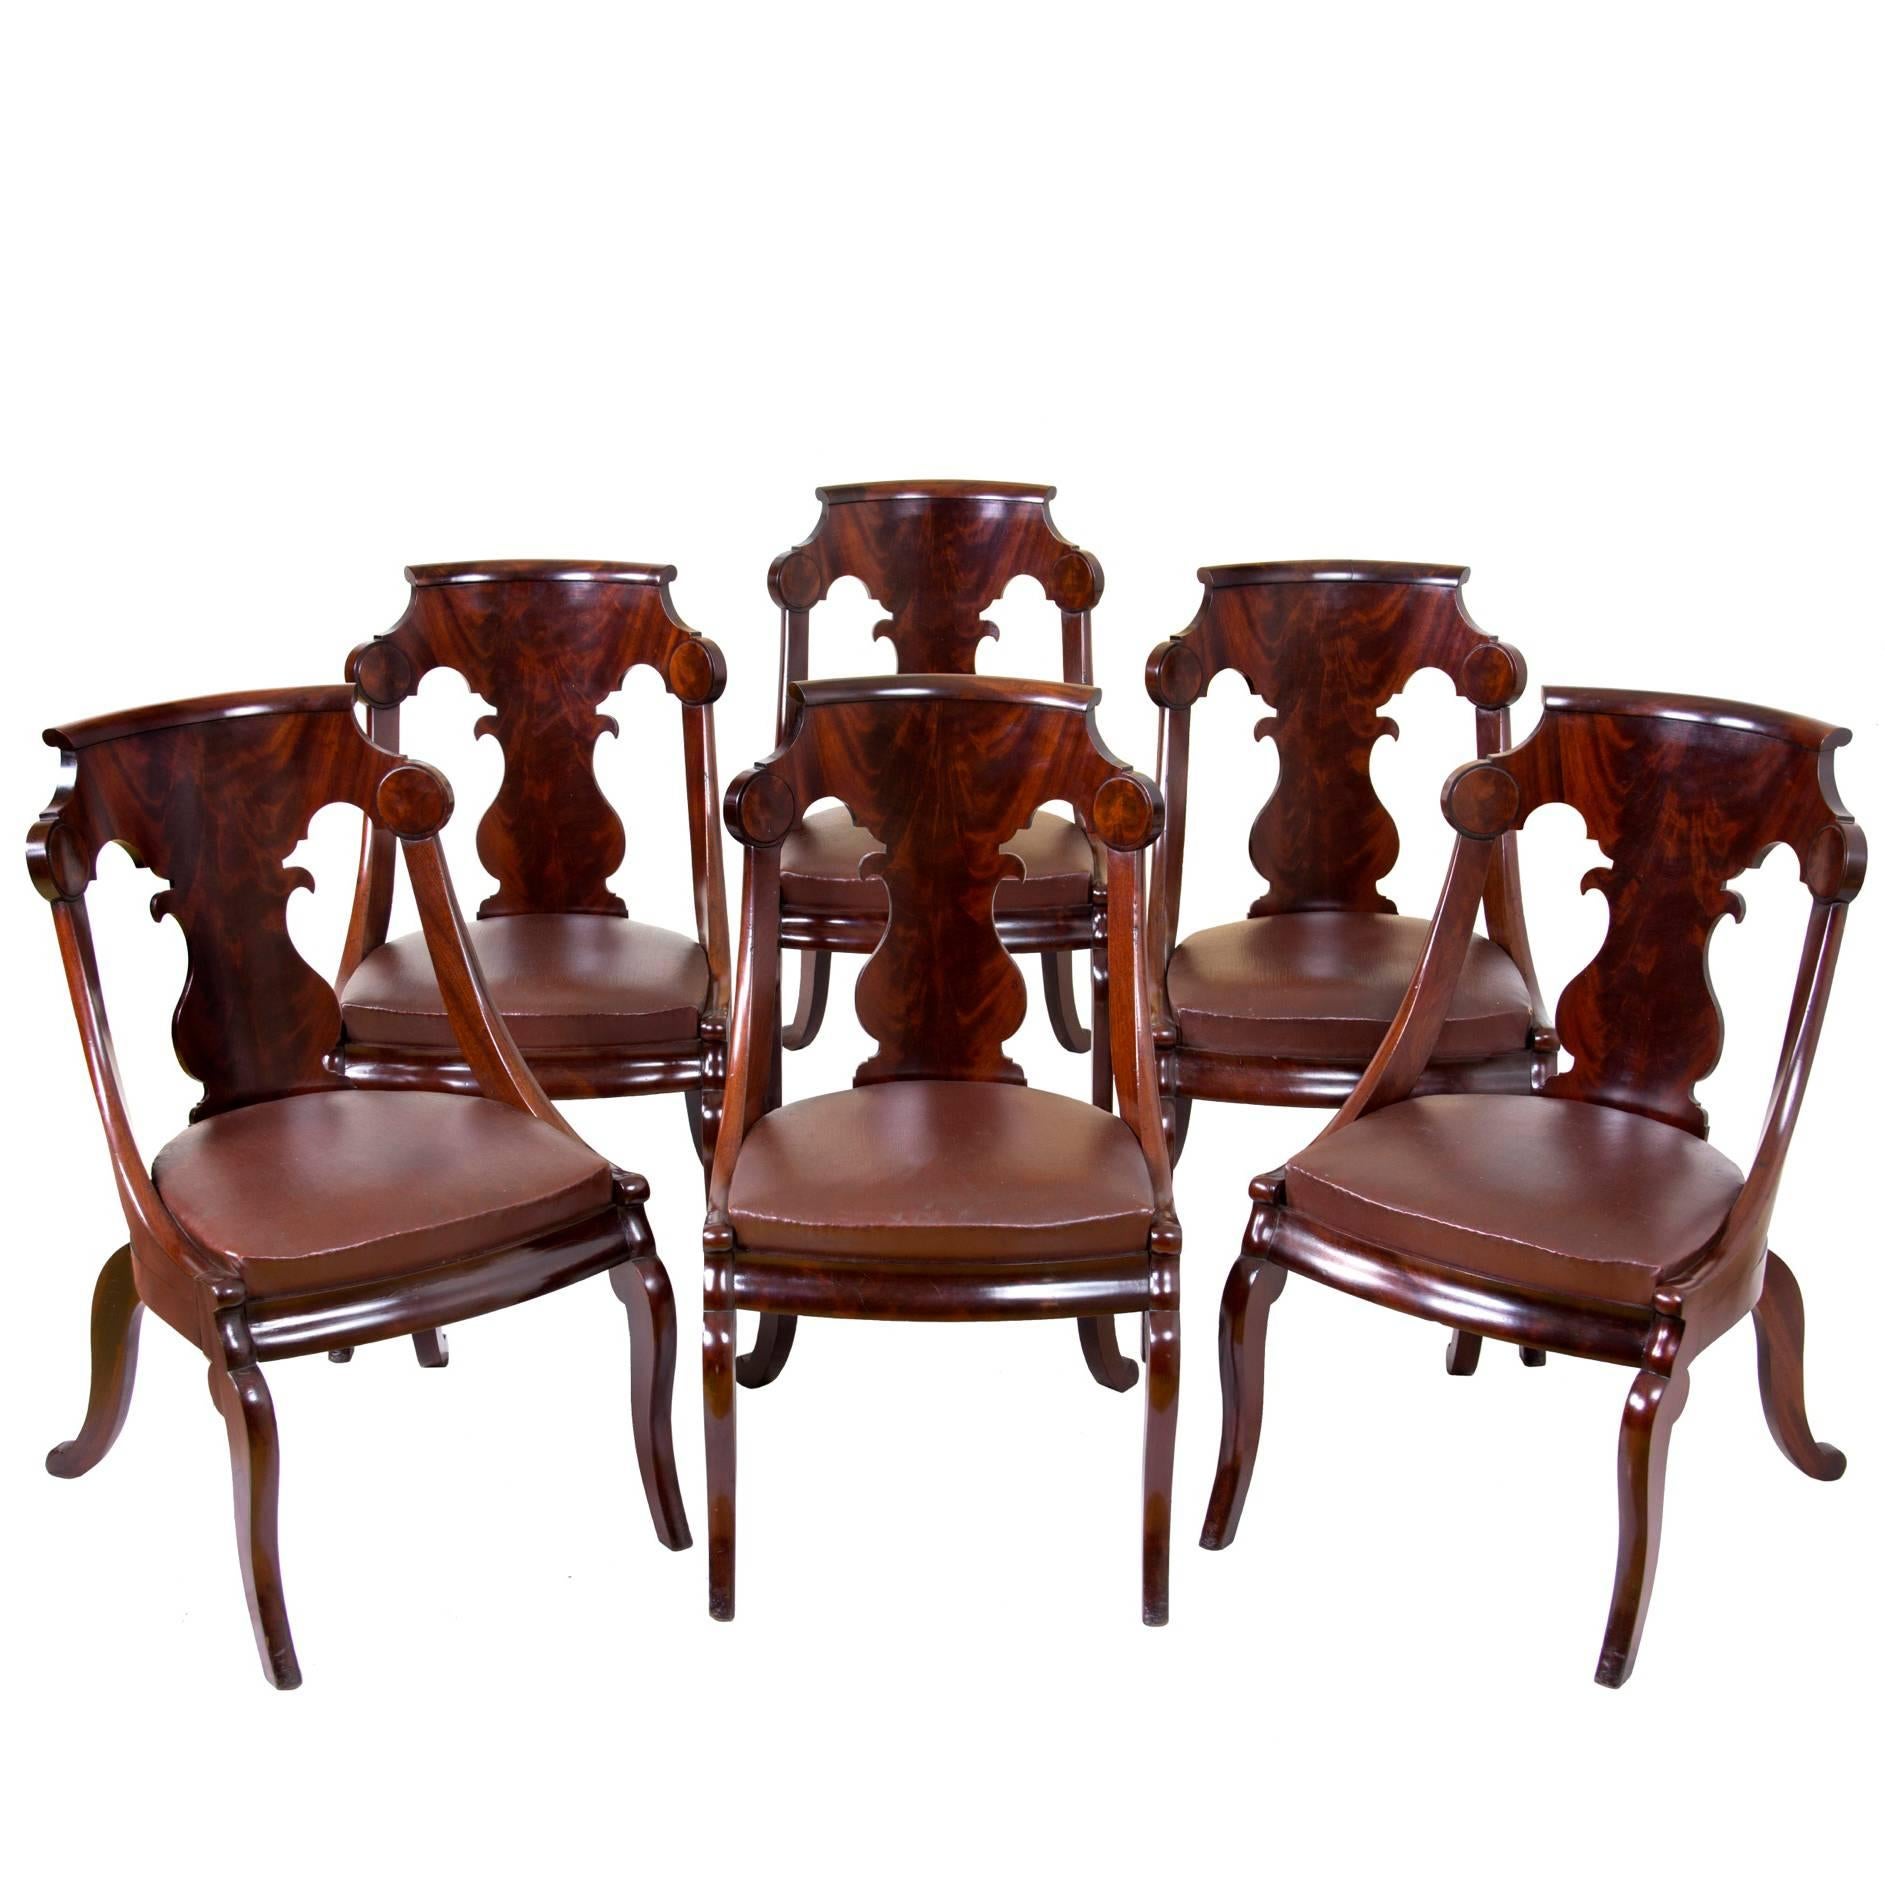 Set of Six Classical Stylized Gondola Chairs, circa 1820-1830, Boston